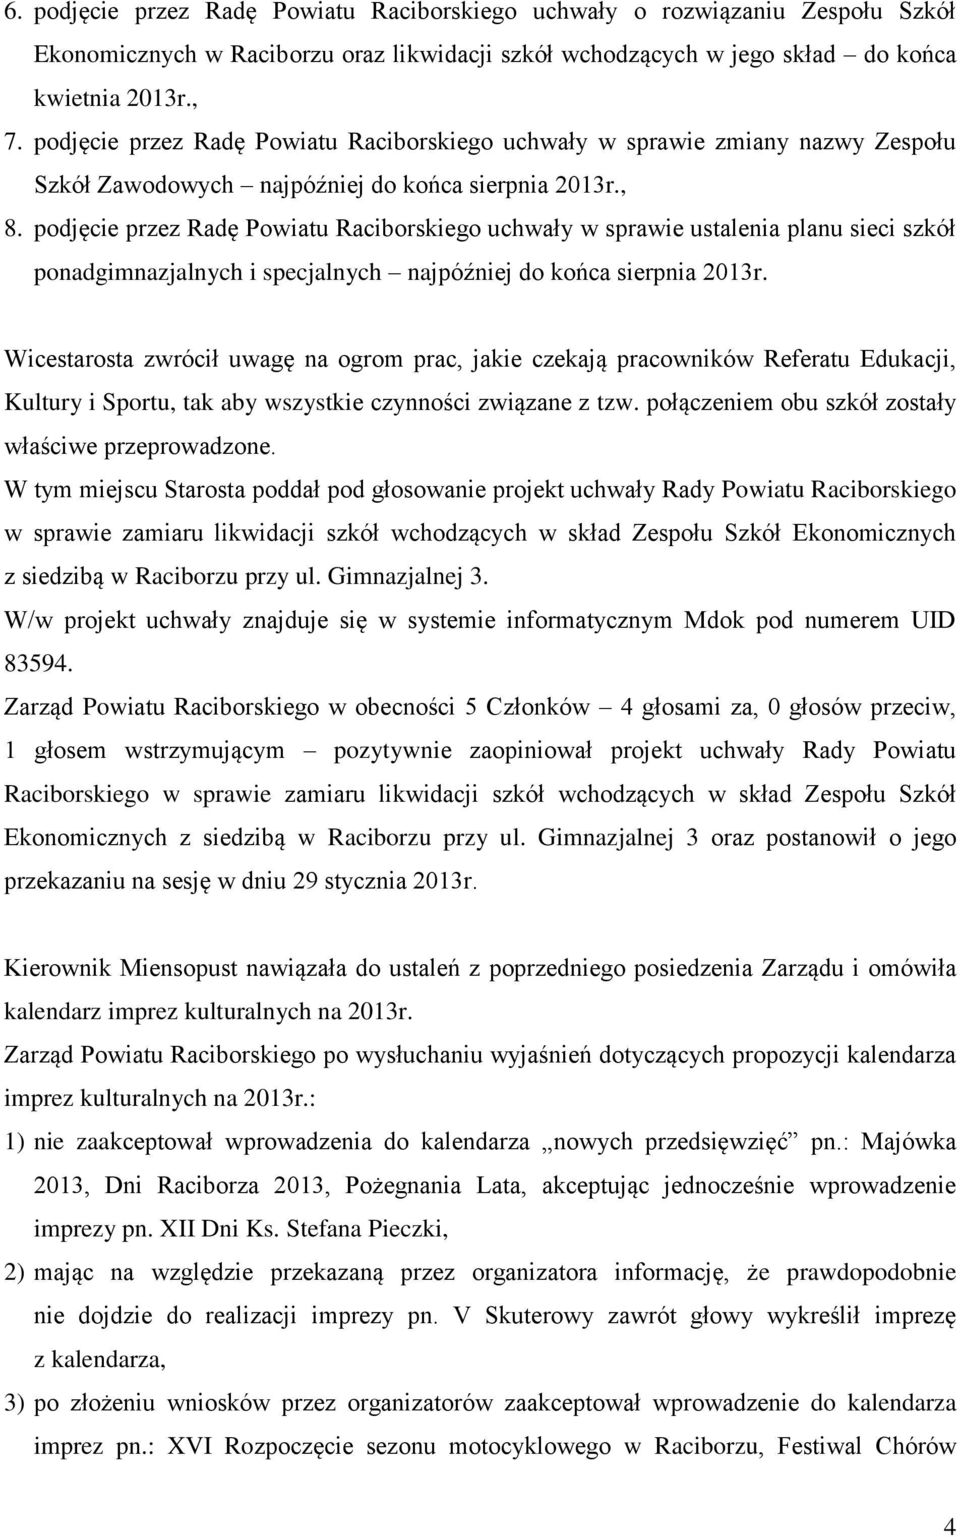 podjęcie przez Radę Powiatu Raciborskiego uchwały w sprawie ustalenia planu sieci szkół ponadgimnazjalnych i specjalnych najpóźniej do końca sierpnia 2013r.